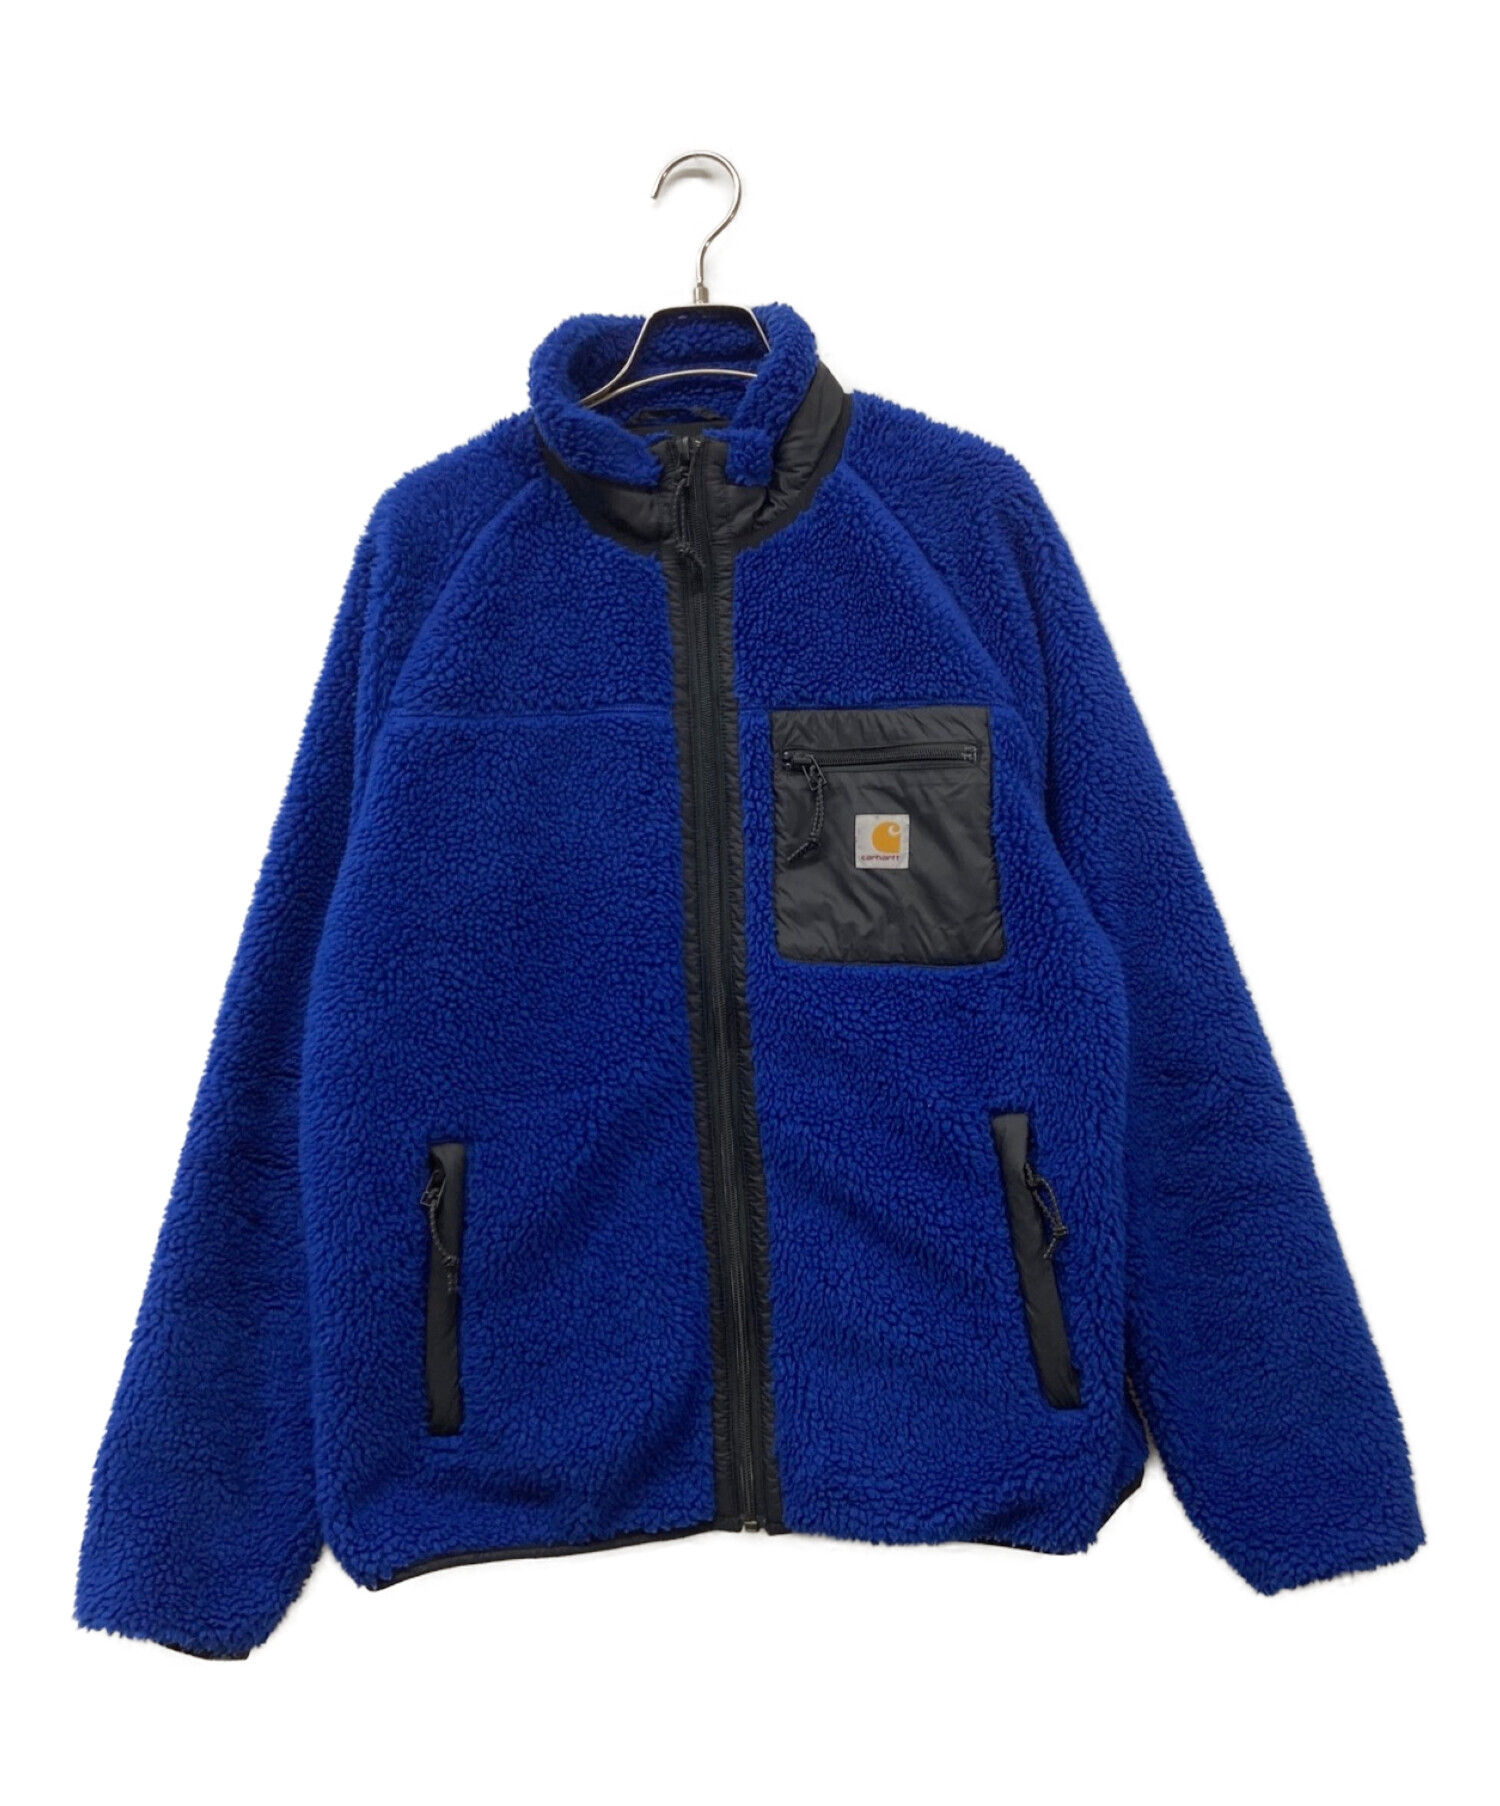 CarHartt (カーハート) ボアジャケット ブルー サイズ:M